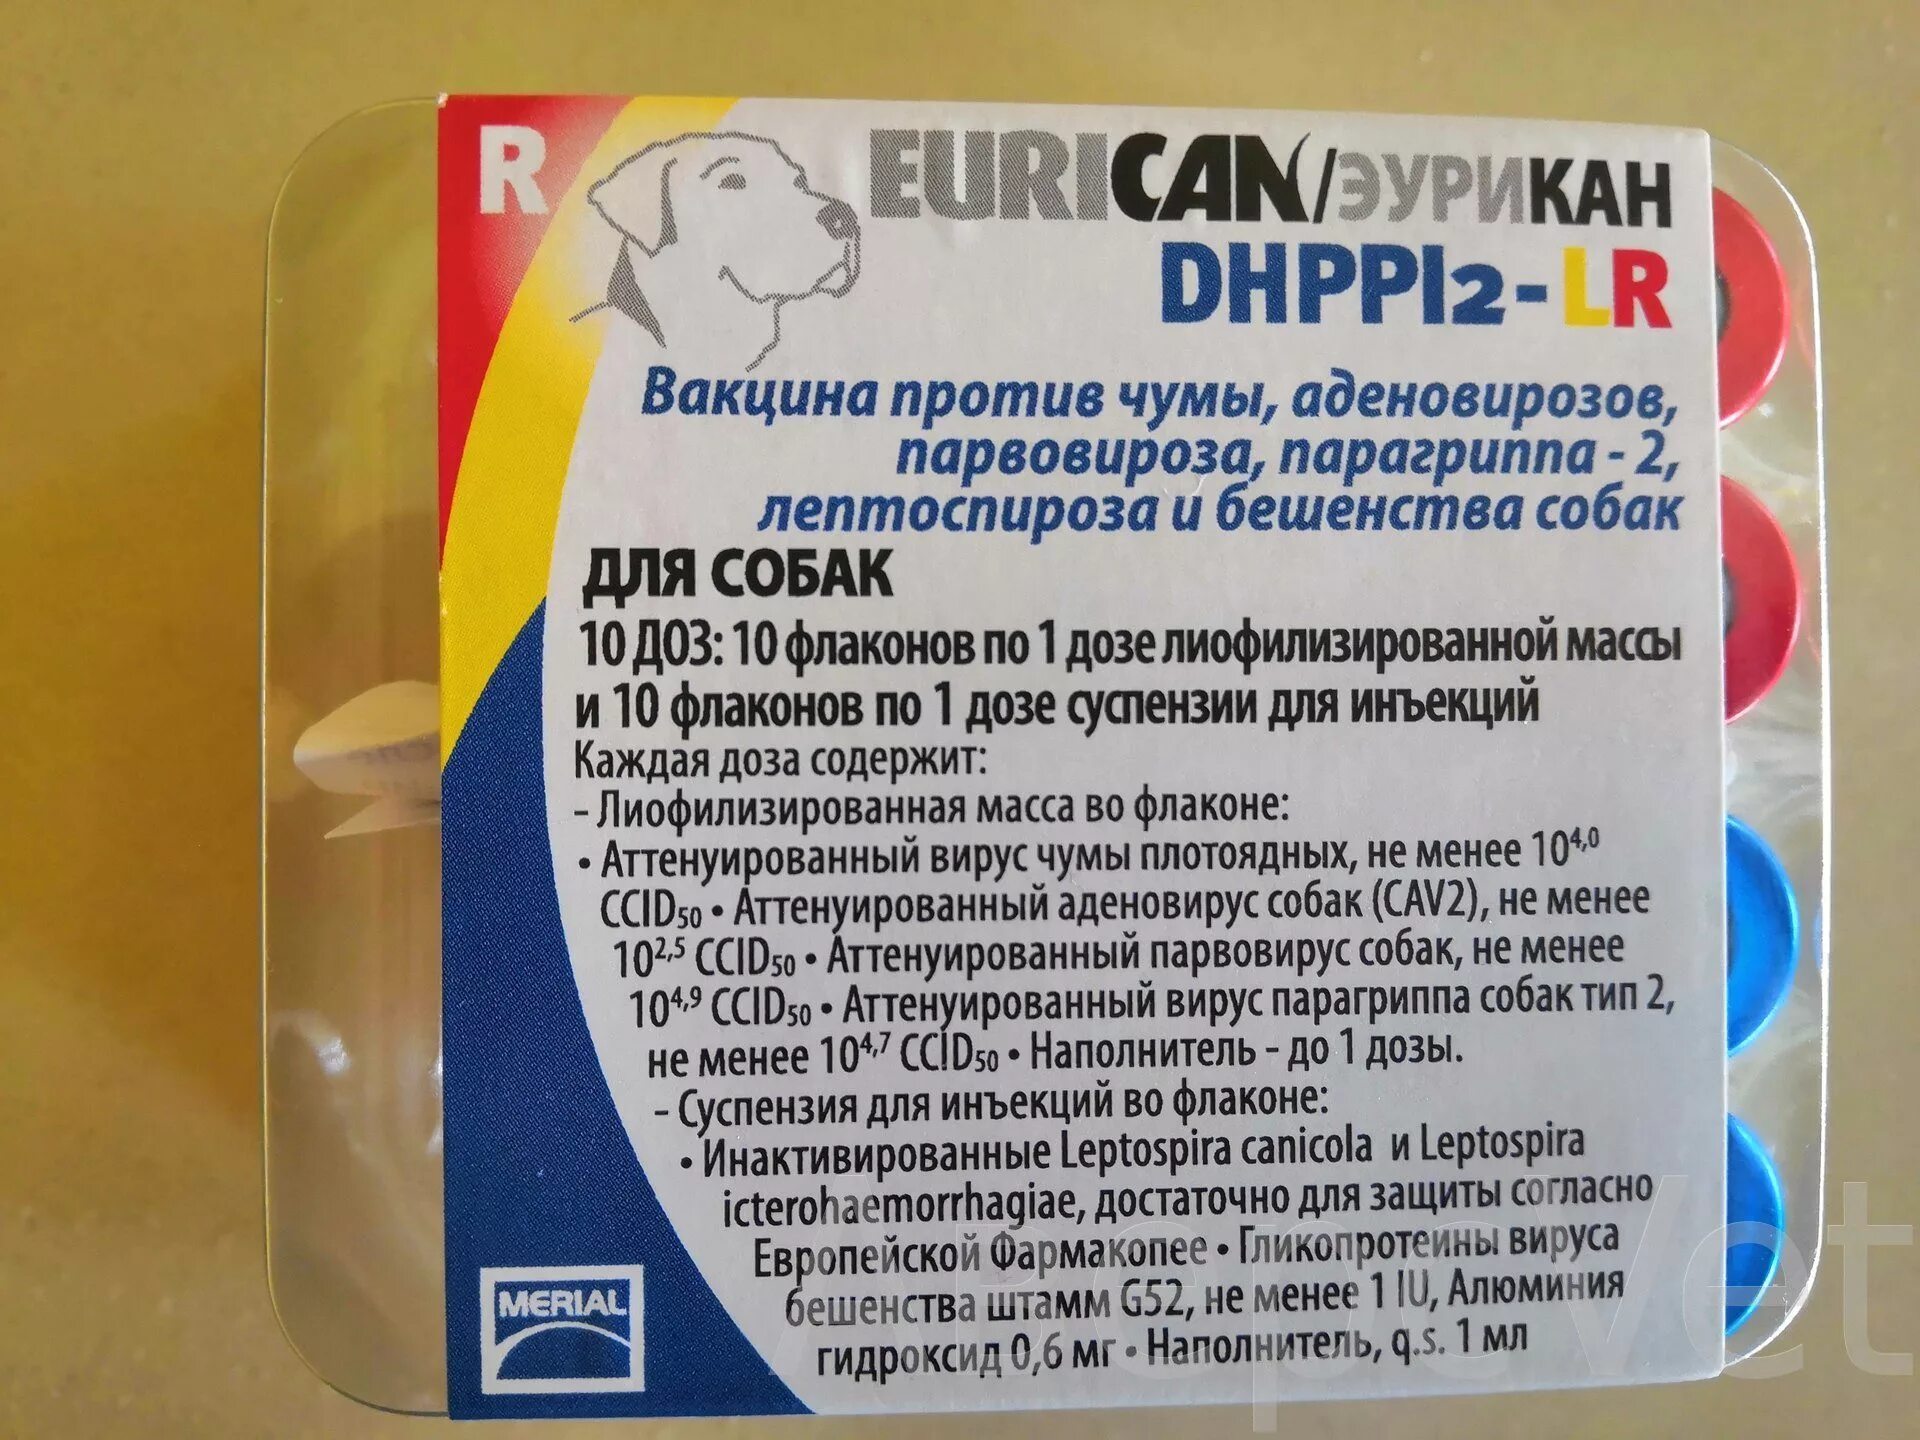 Вакцина эурикан для собак купить в москве. Eurican dhppi2. Вакцина вангард7. Эурикан dhppi2 вакцина для собак. Вакцина Эурикан dhppi2.